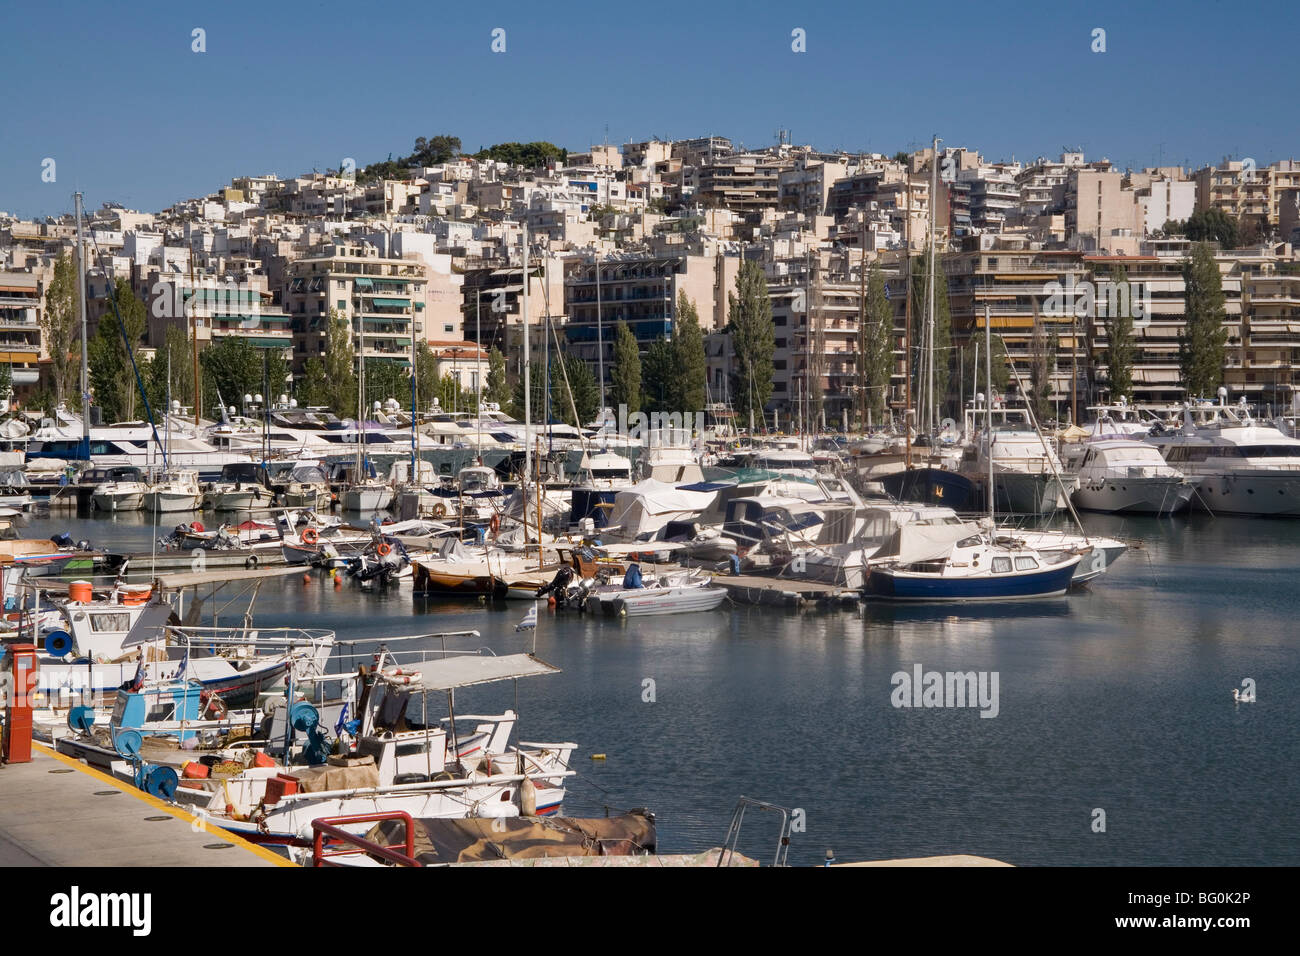 Zea marina, Piraeus, Athens, Greece, Europe Stock Photo